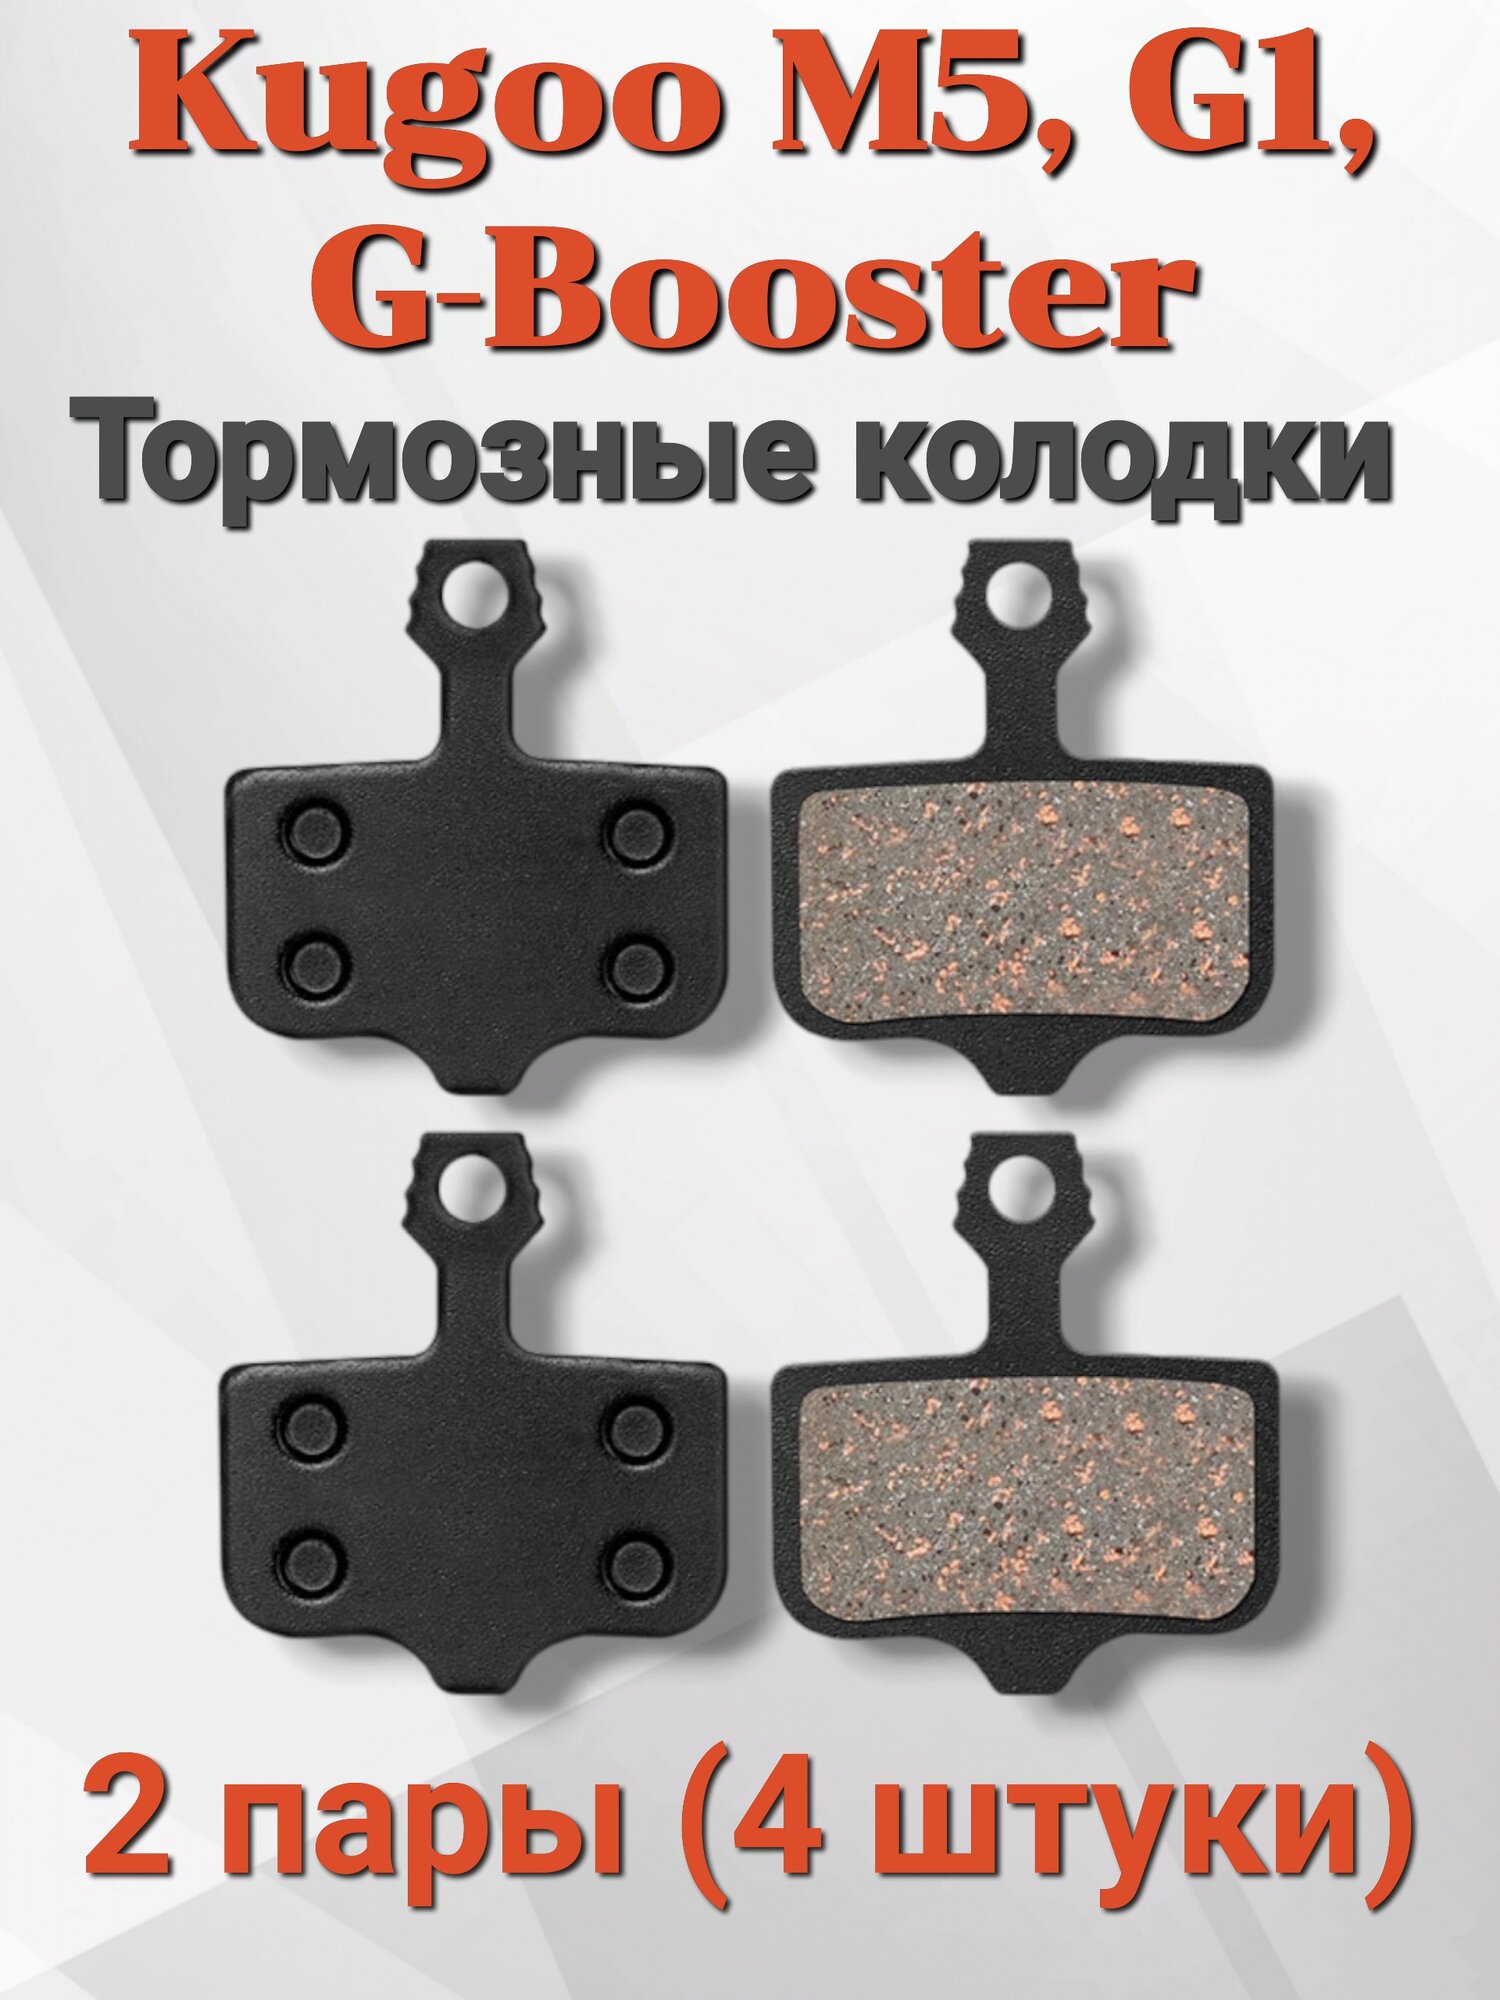 Тормозные колодки Kugoo для электросамокатов M5/G1/G Booster 4 штуки в упаковке